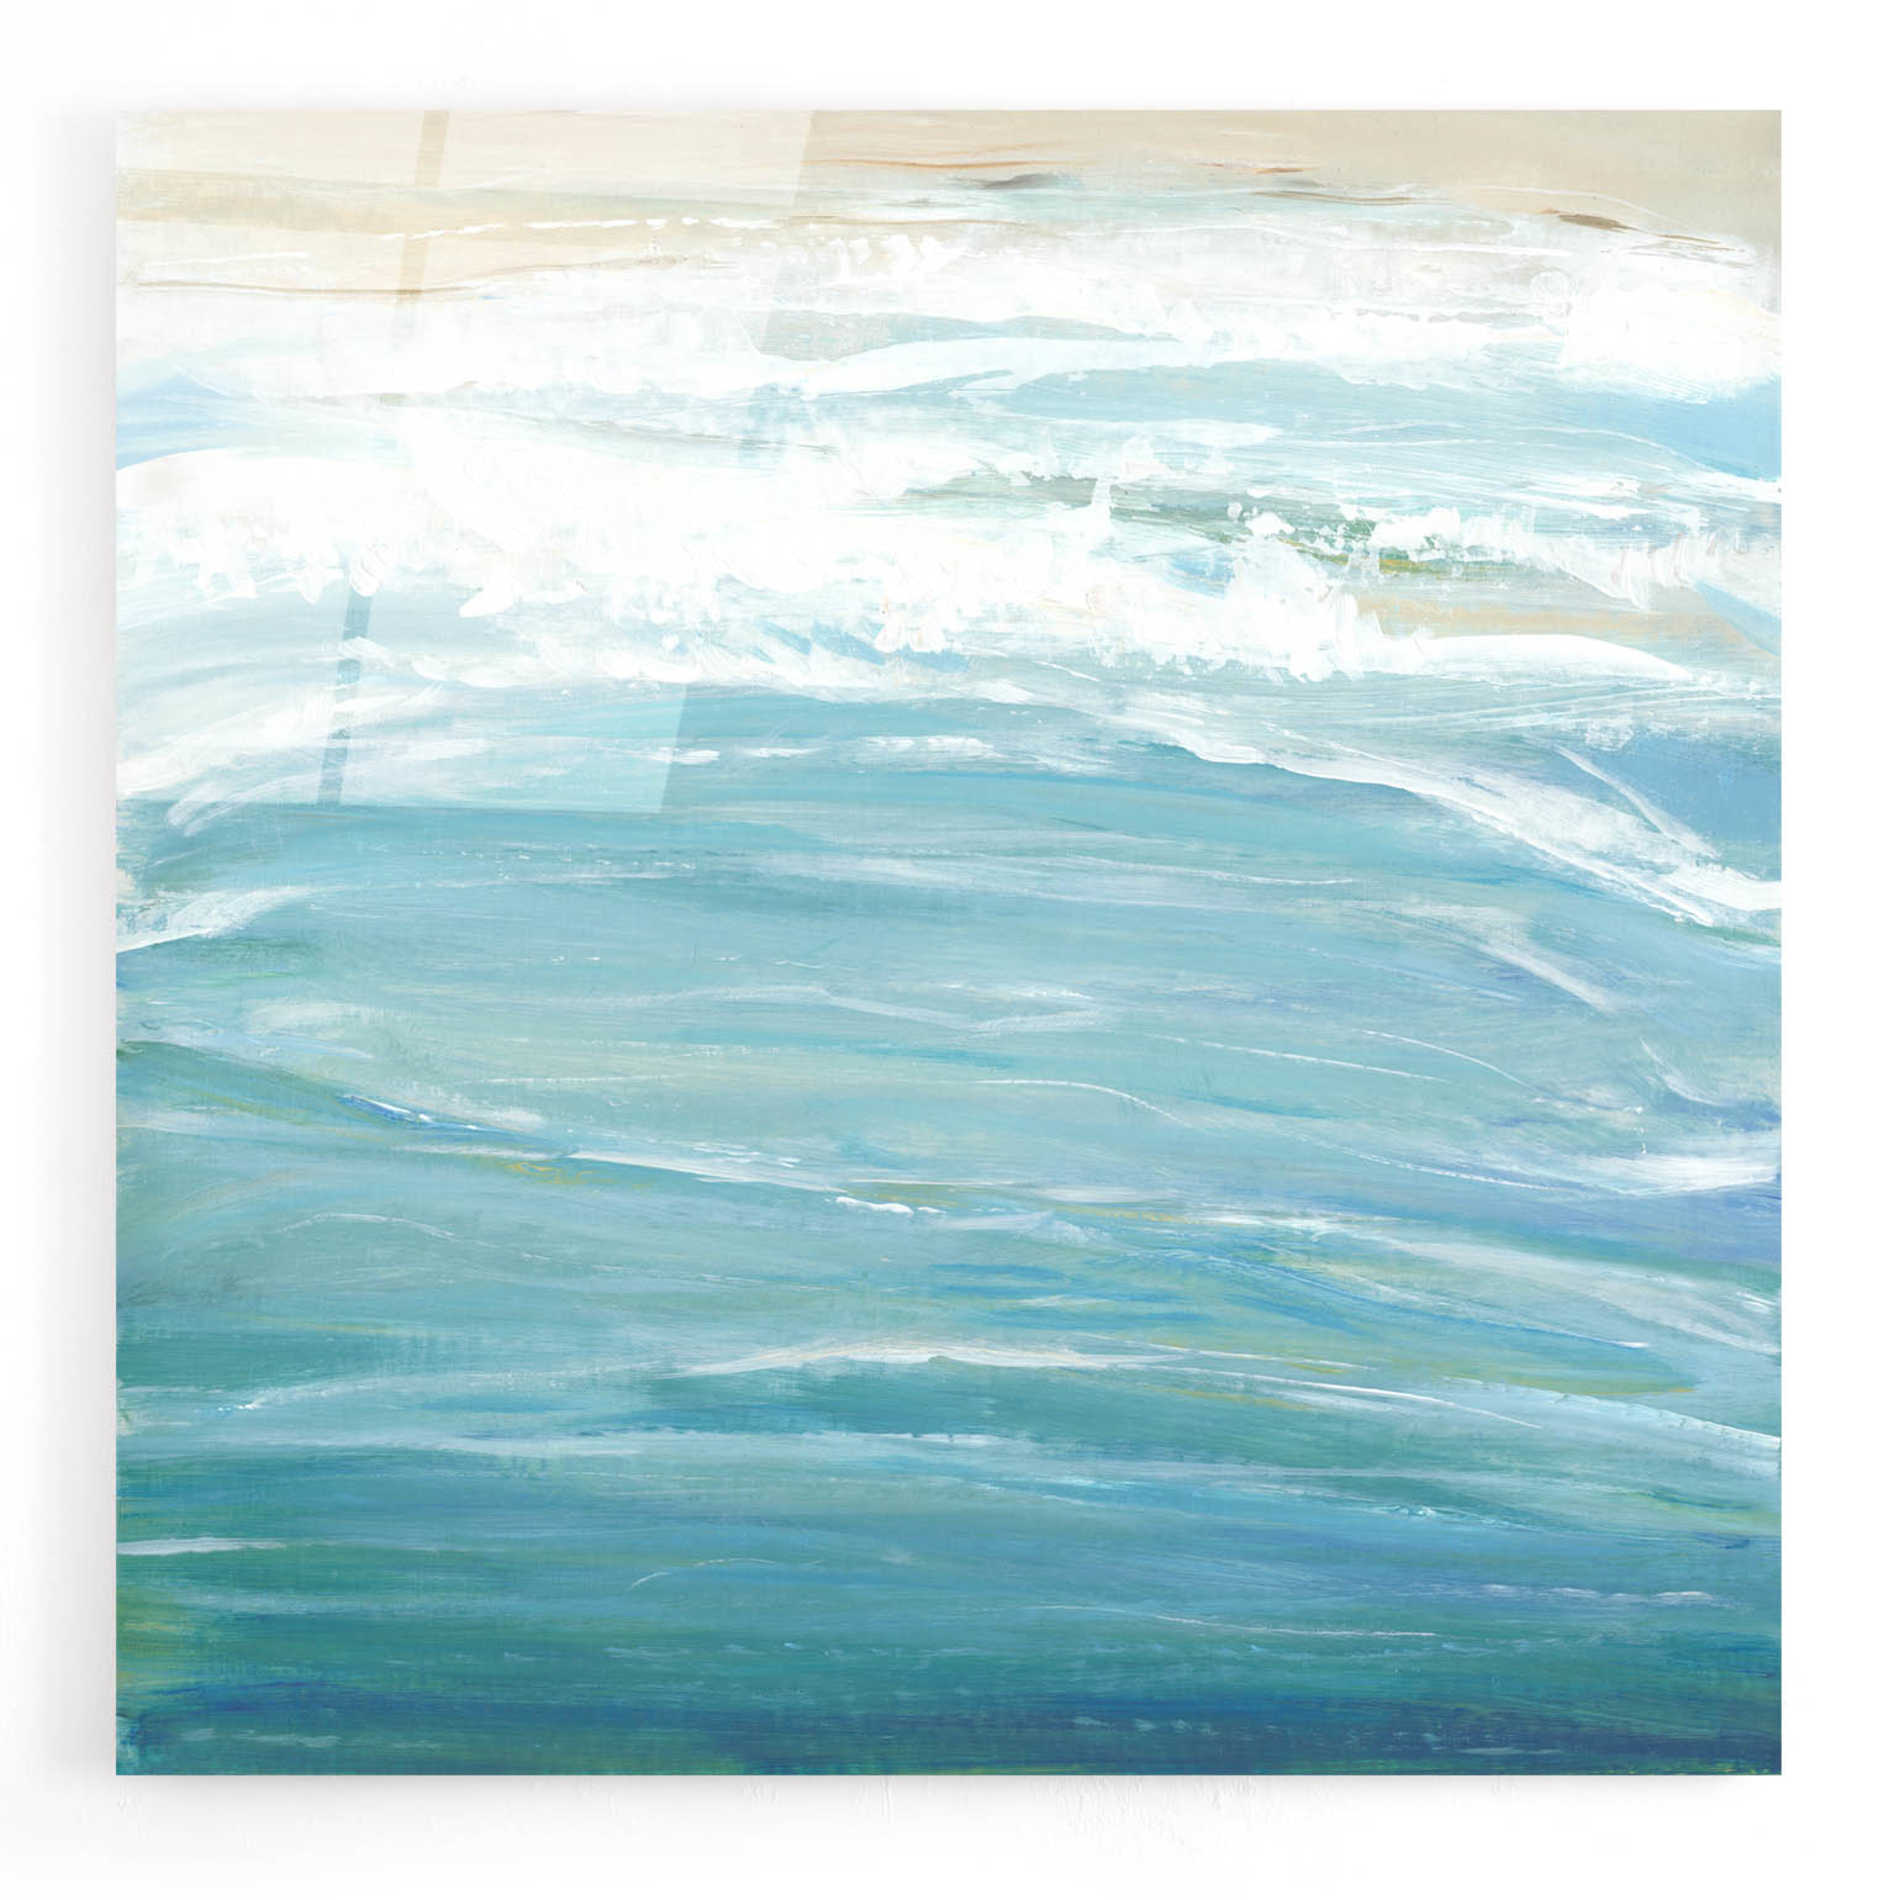 Epic Art 'Sea Breeze Coast II' by Tim O'Toole, Acrylic Glass Wall Art,24x24